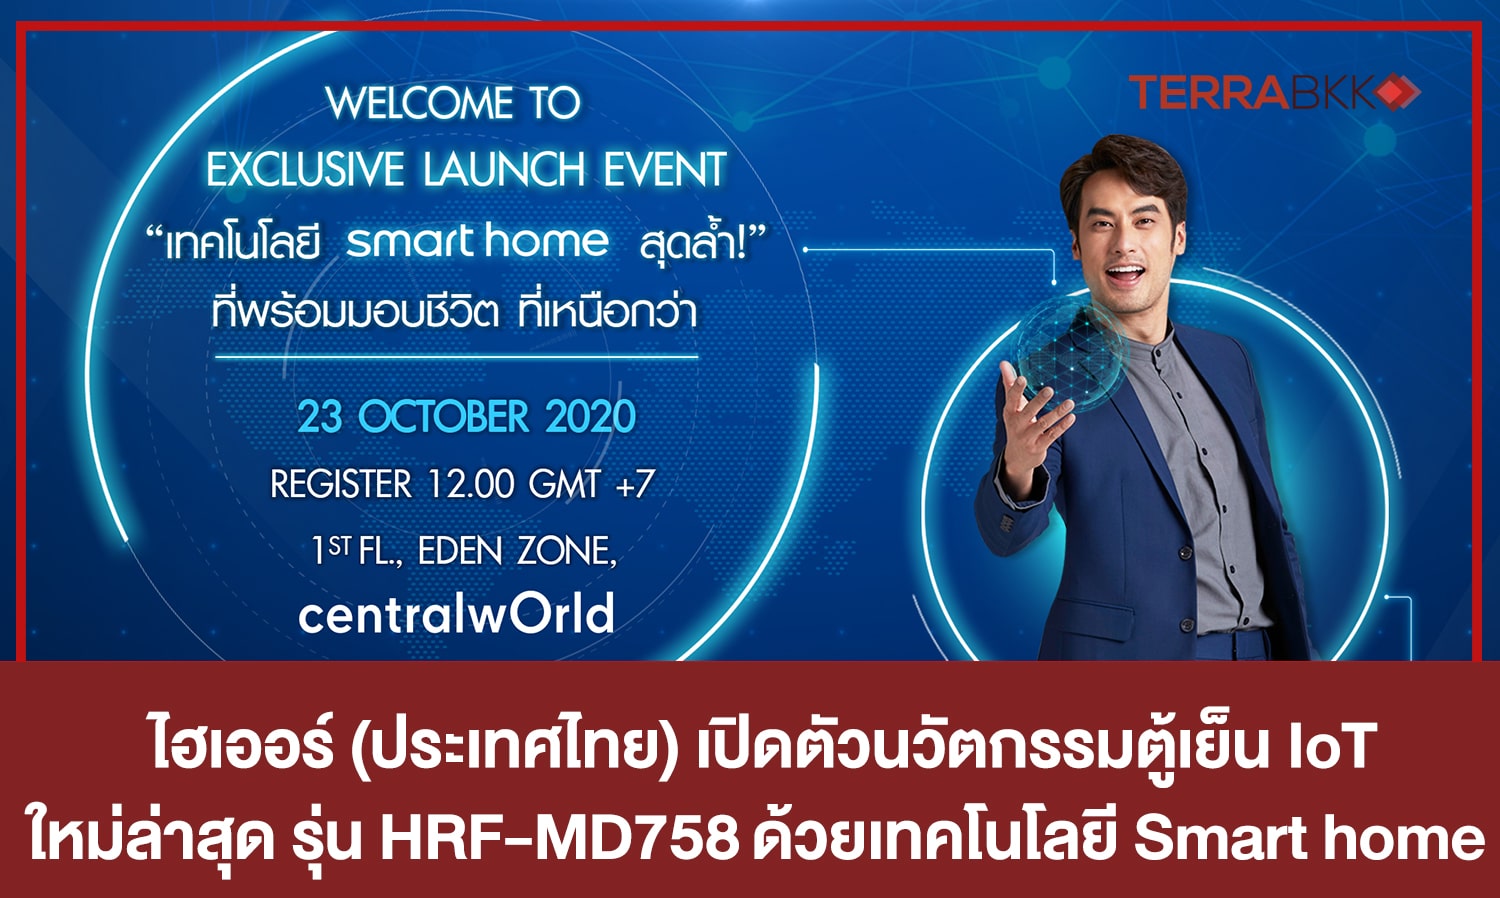 ไฮเออร์ (ประเทศไทย) เปิดตัวนวัตกรรมตู้เย็น IoT ใหม่ล่าสุด รุ่น HRF-MD758   ด้วยเทคโนโลยี Smart home สุดล้ำครั้งแรกในประเทศไทย